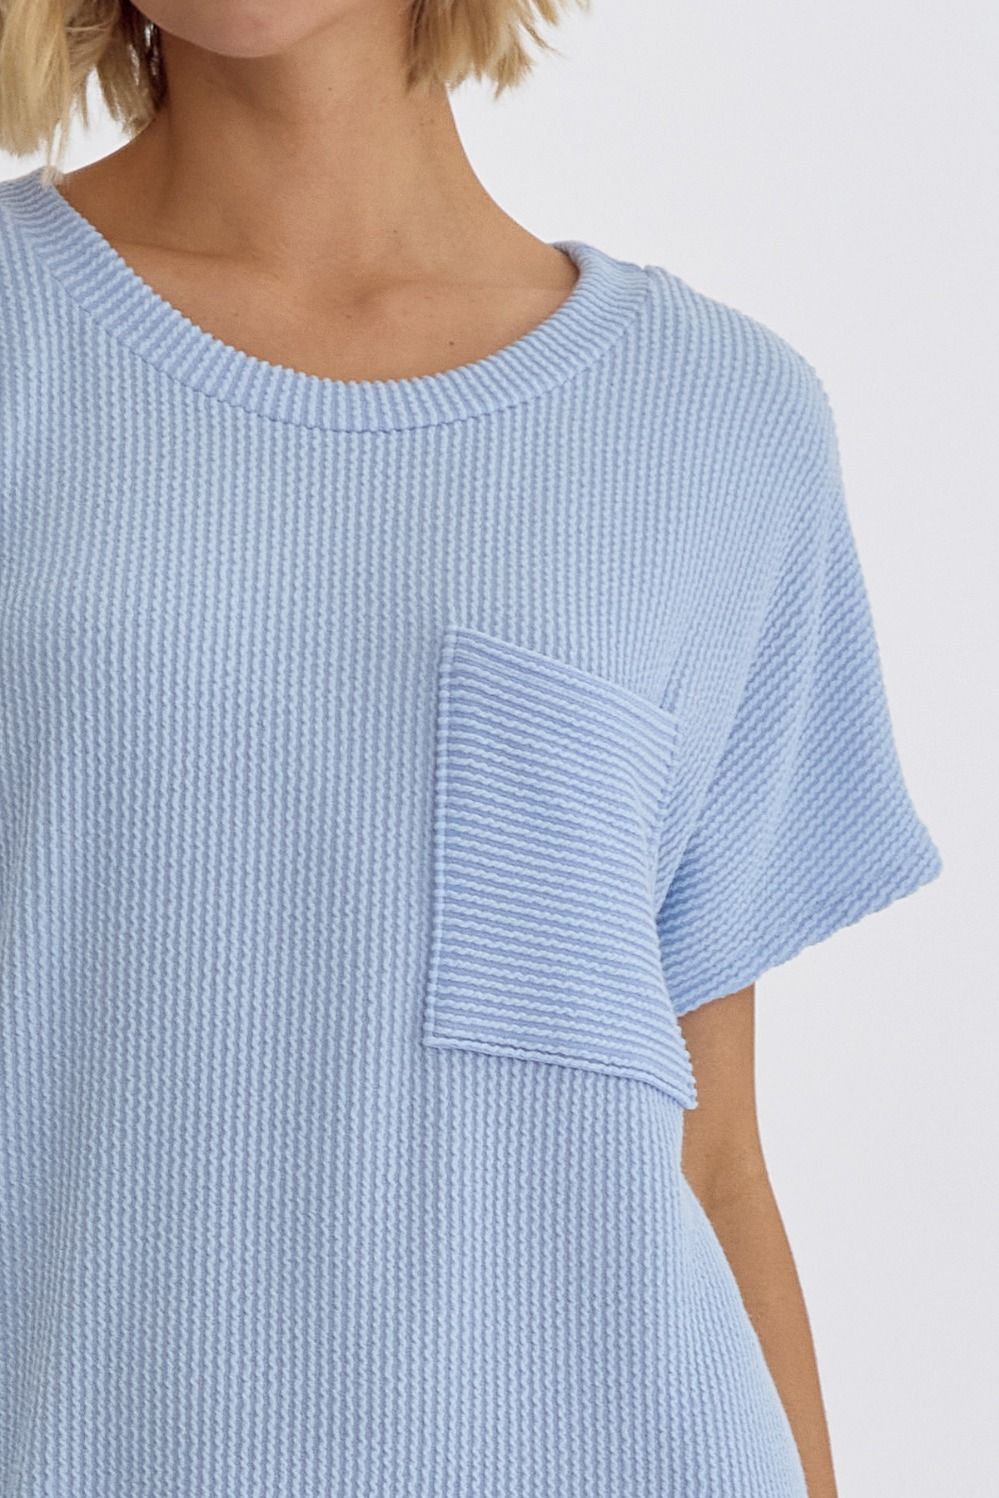 Entro | Light Blue T-Shirt Dress | Sweetest Stitch Online Boutique